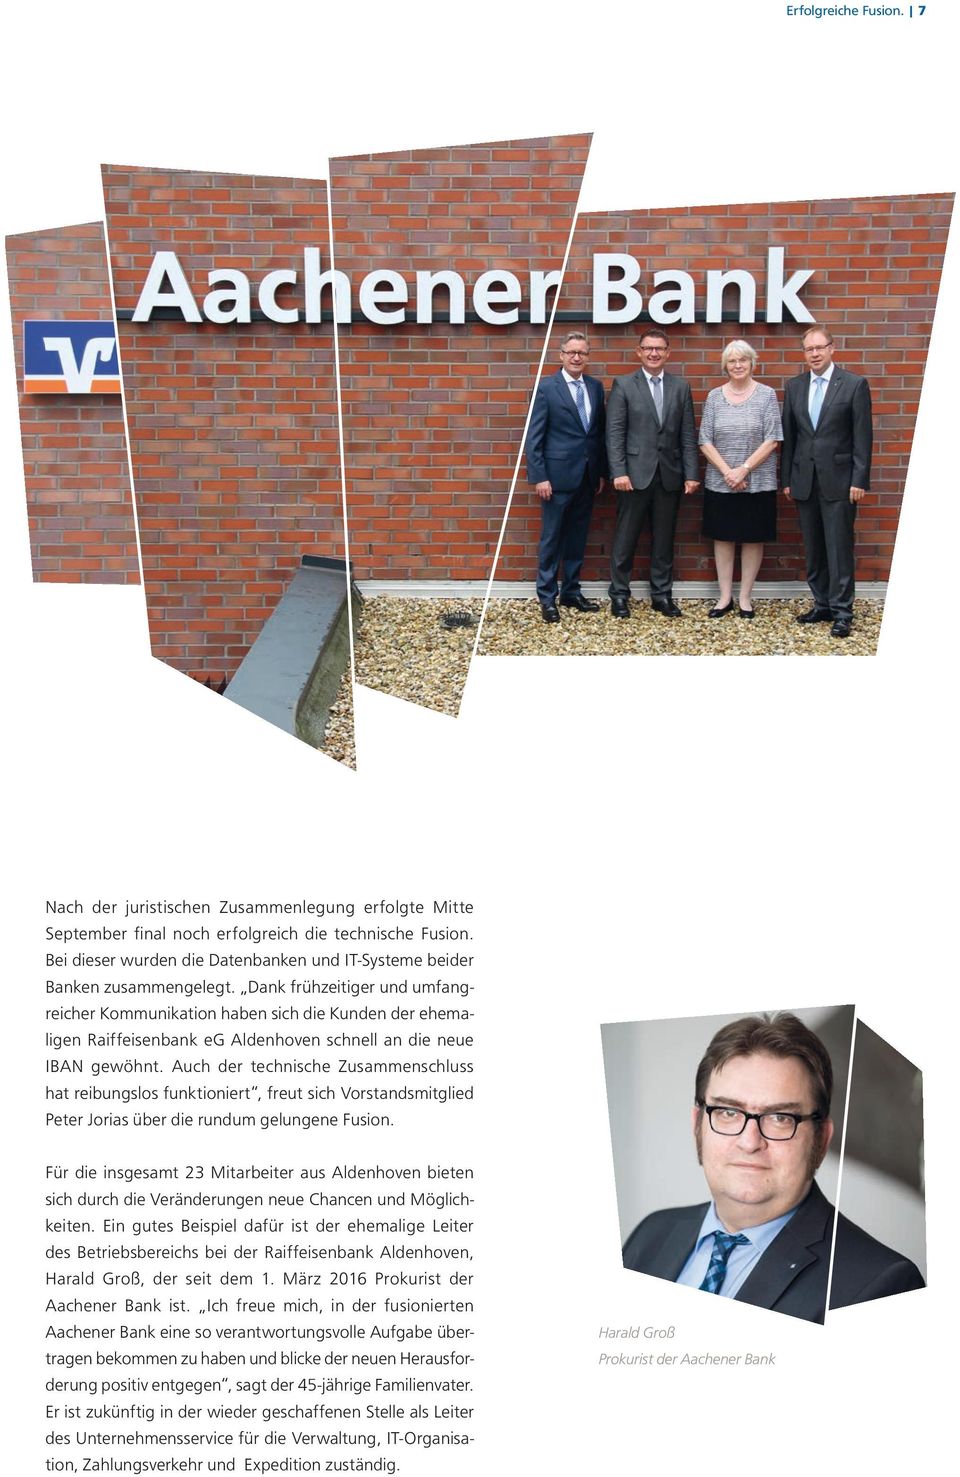 Dank frühzeitiger und umfangreicher Kommunikation haben sich die Kunden der ehemaligen Raiffeisenbank eg Aldenhoven schnell an die neue IBAN gewöhnt.